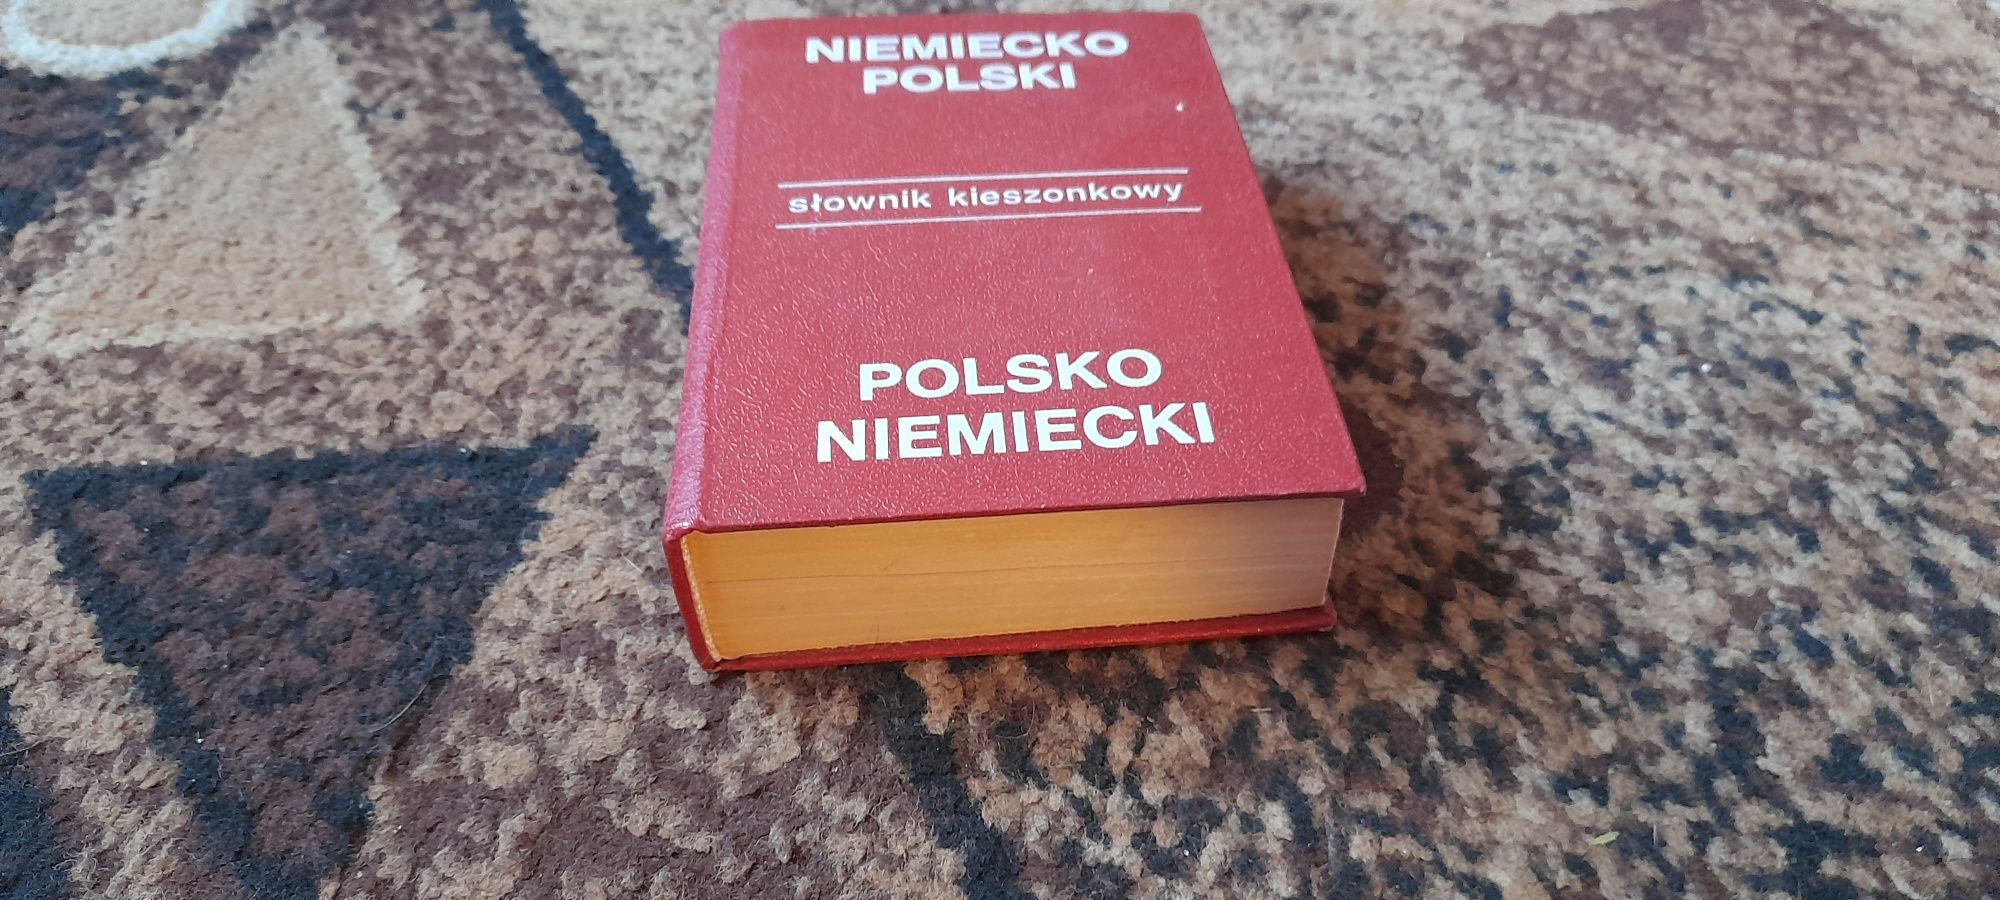 Słownik kieszonkowy-Polsko Niemiecki Niemiecko Polski-Jan Czochralski